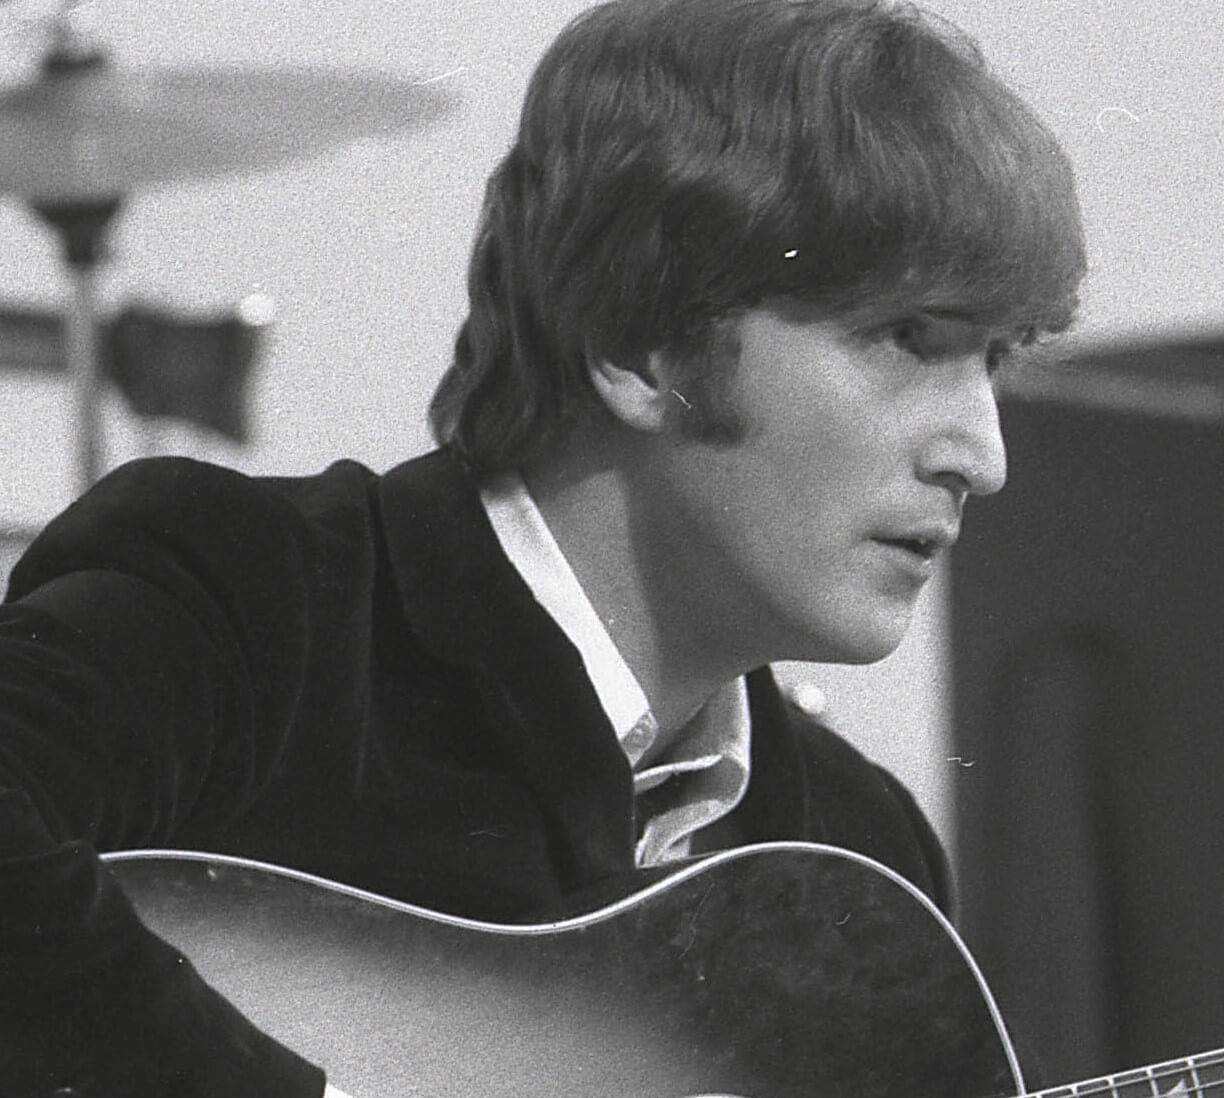 John Lennon wearing a suit